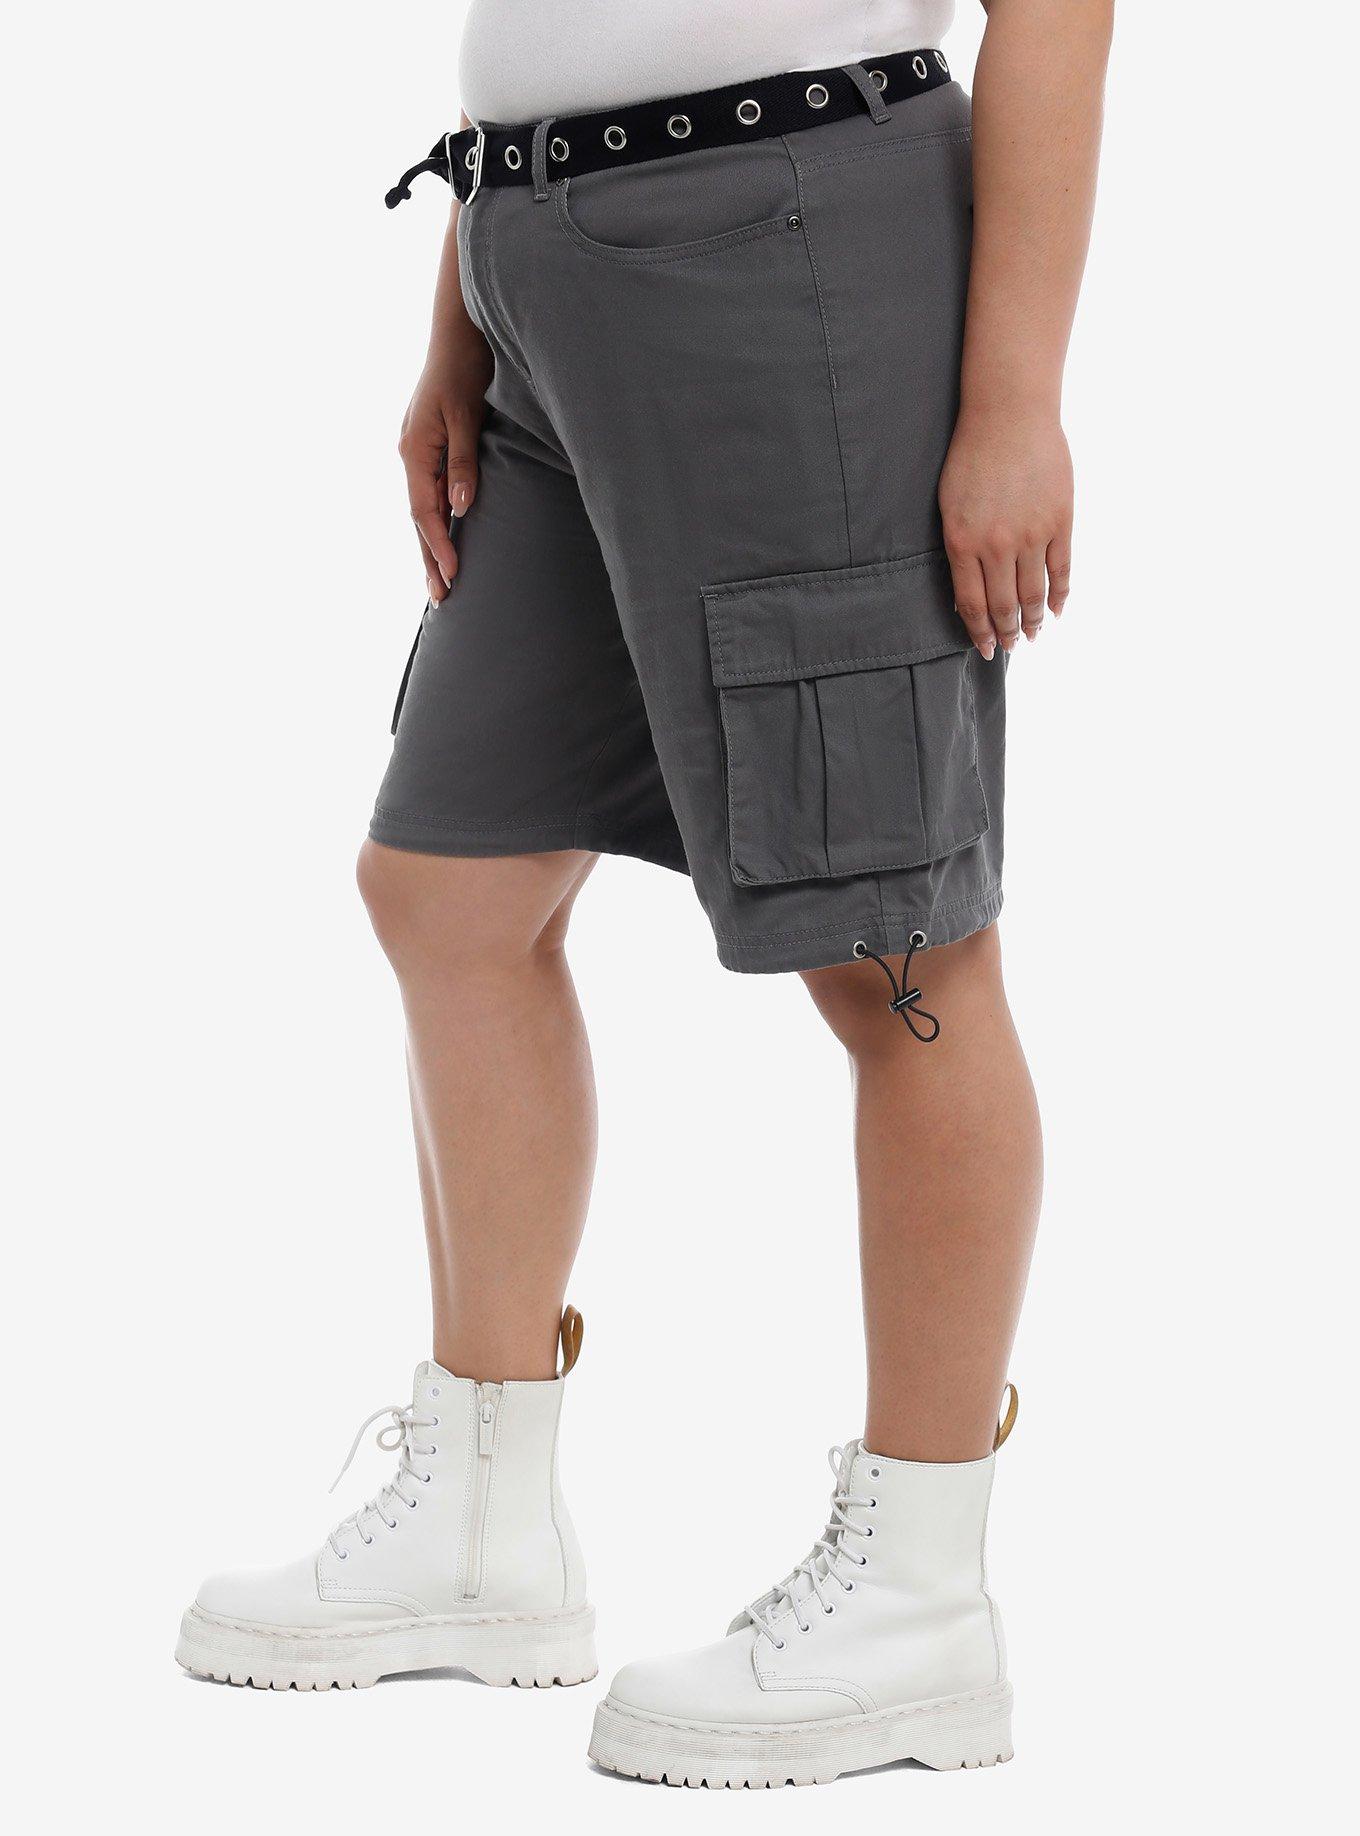 Grey Cargo Shorts With Grommet Belt Plus Size, DARK BLUE, alternate